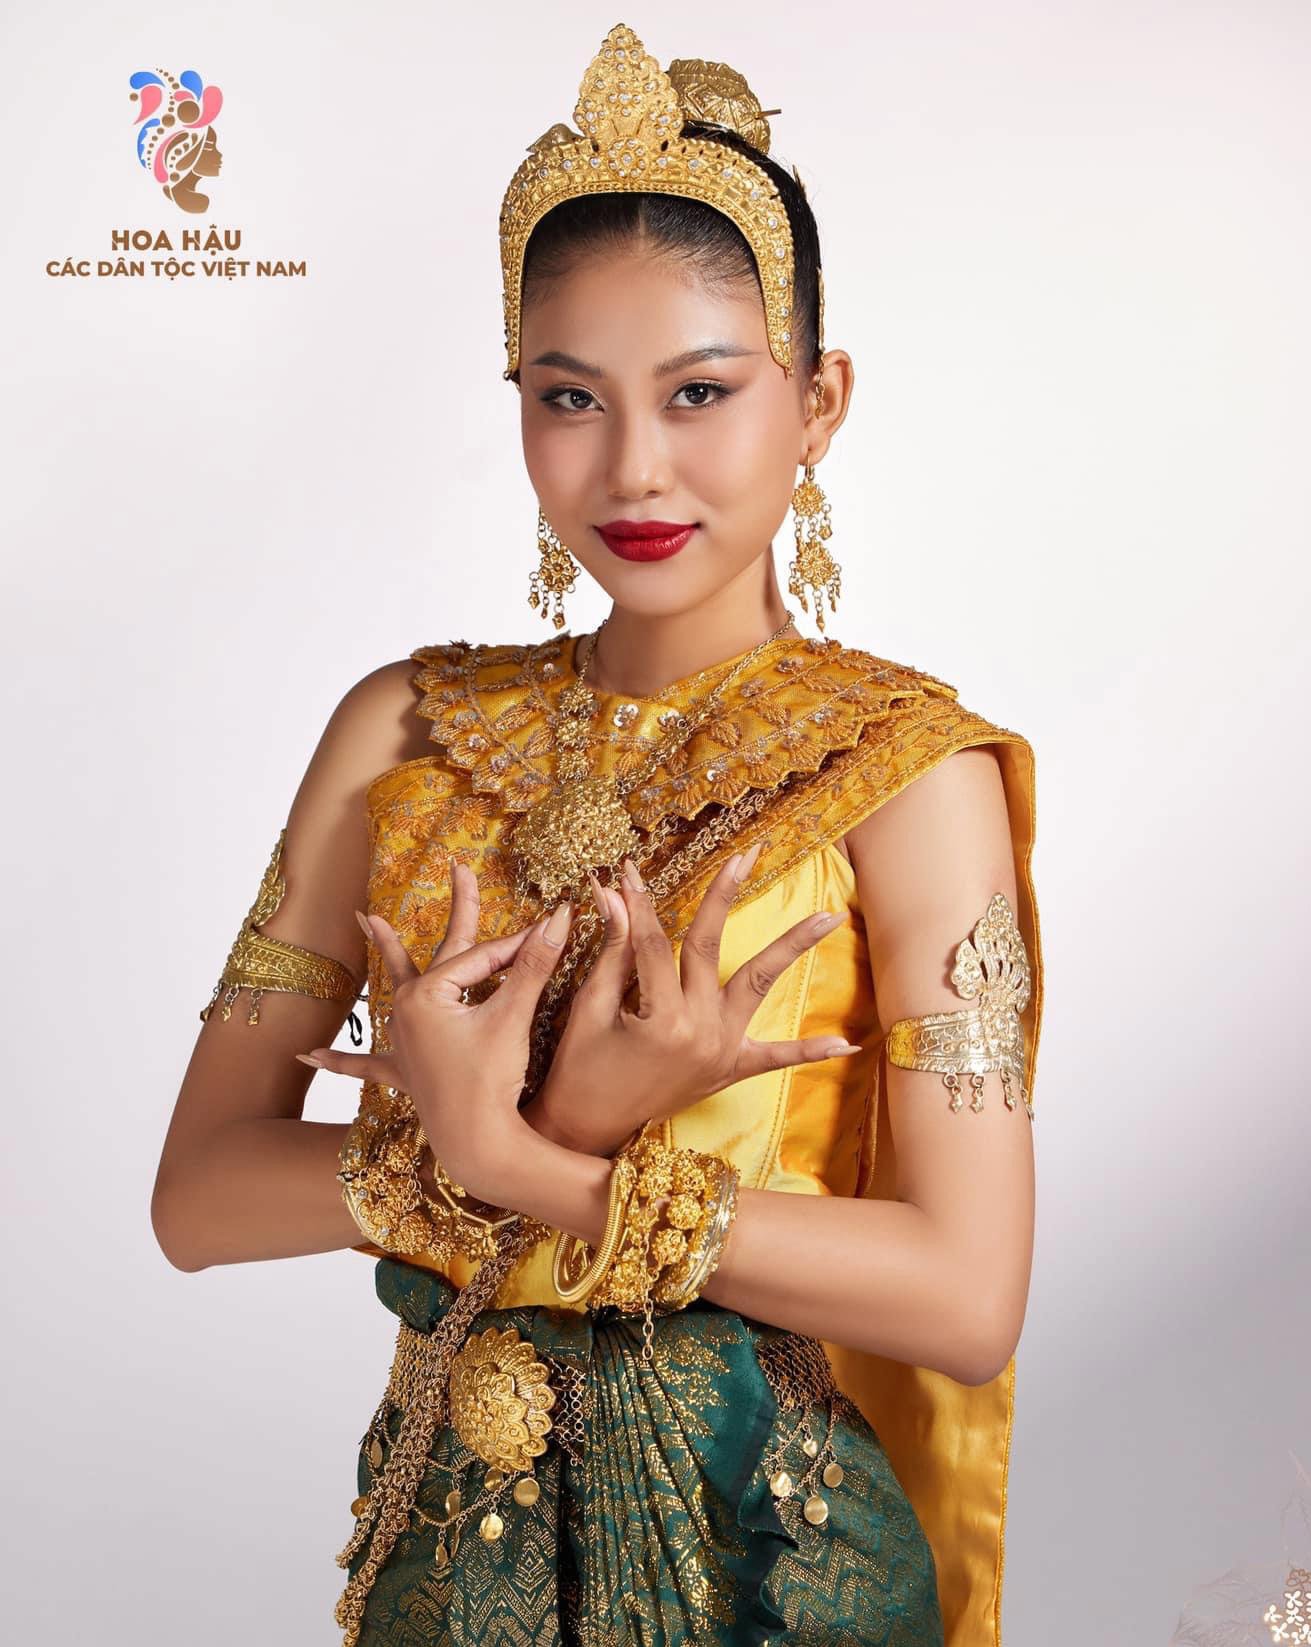 Nữ sinh diện trang phục truyền thống Khmer nổi bật nhất Hoa hậu các Dân tộc Việt Nam - 1